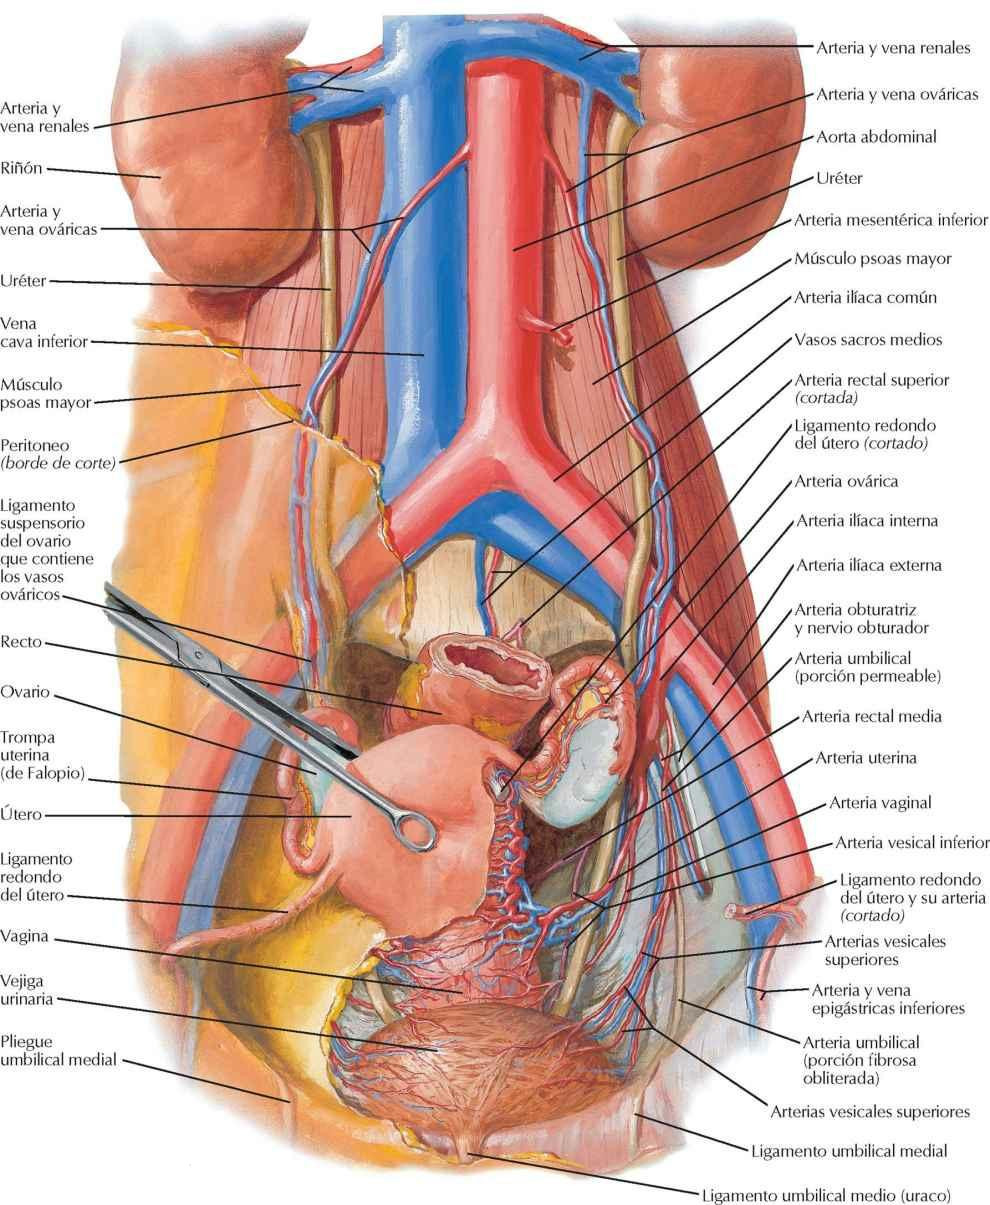 Arterias y venas de los órganos pélvicos femeninos: visión anterior